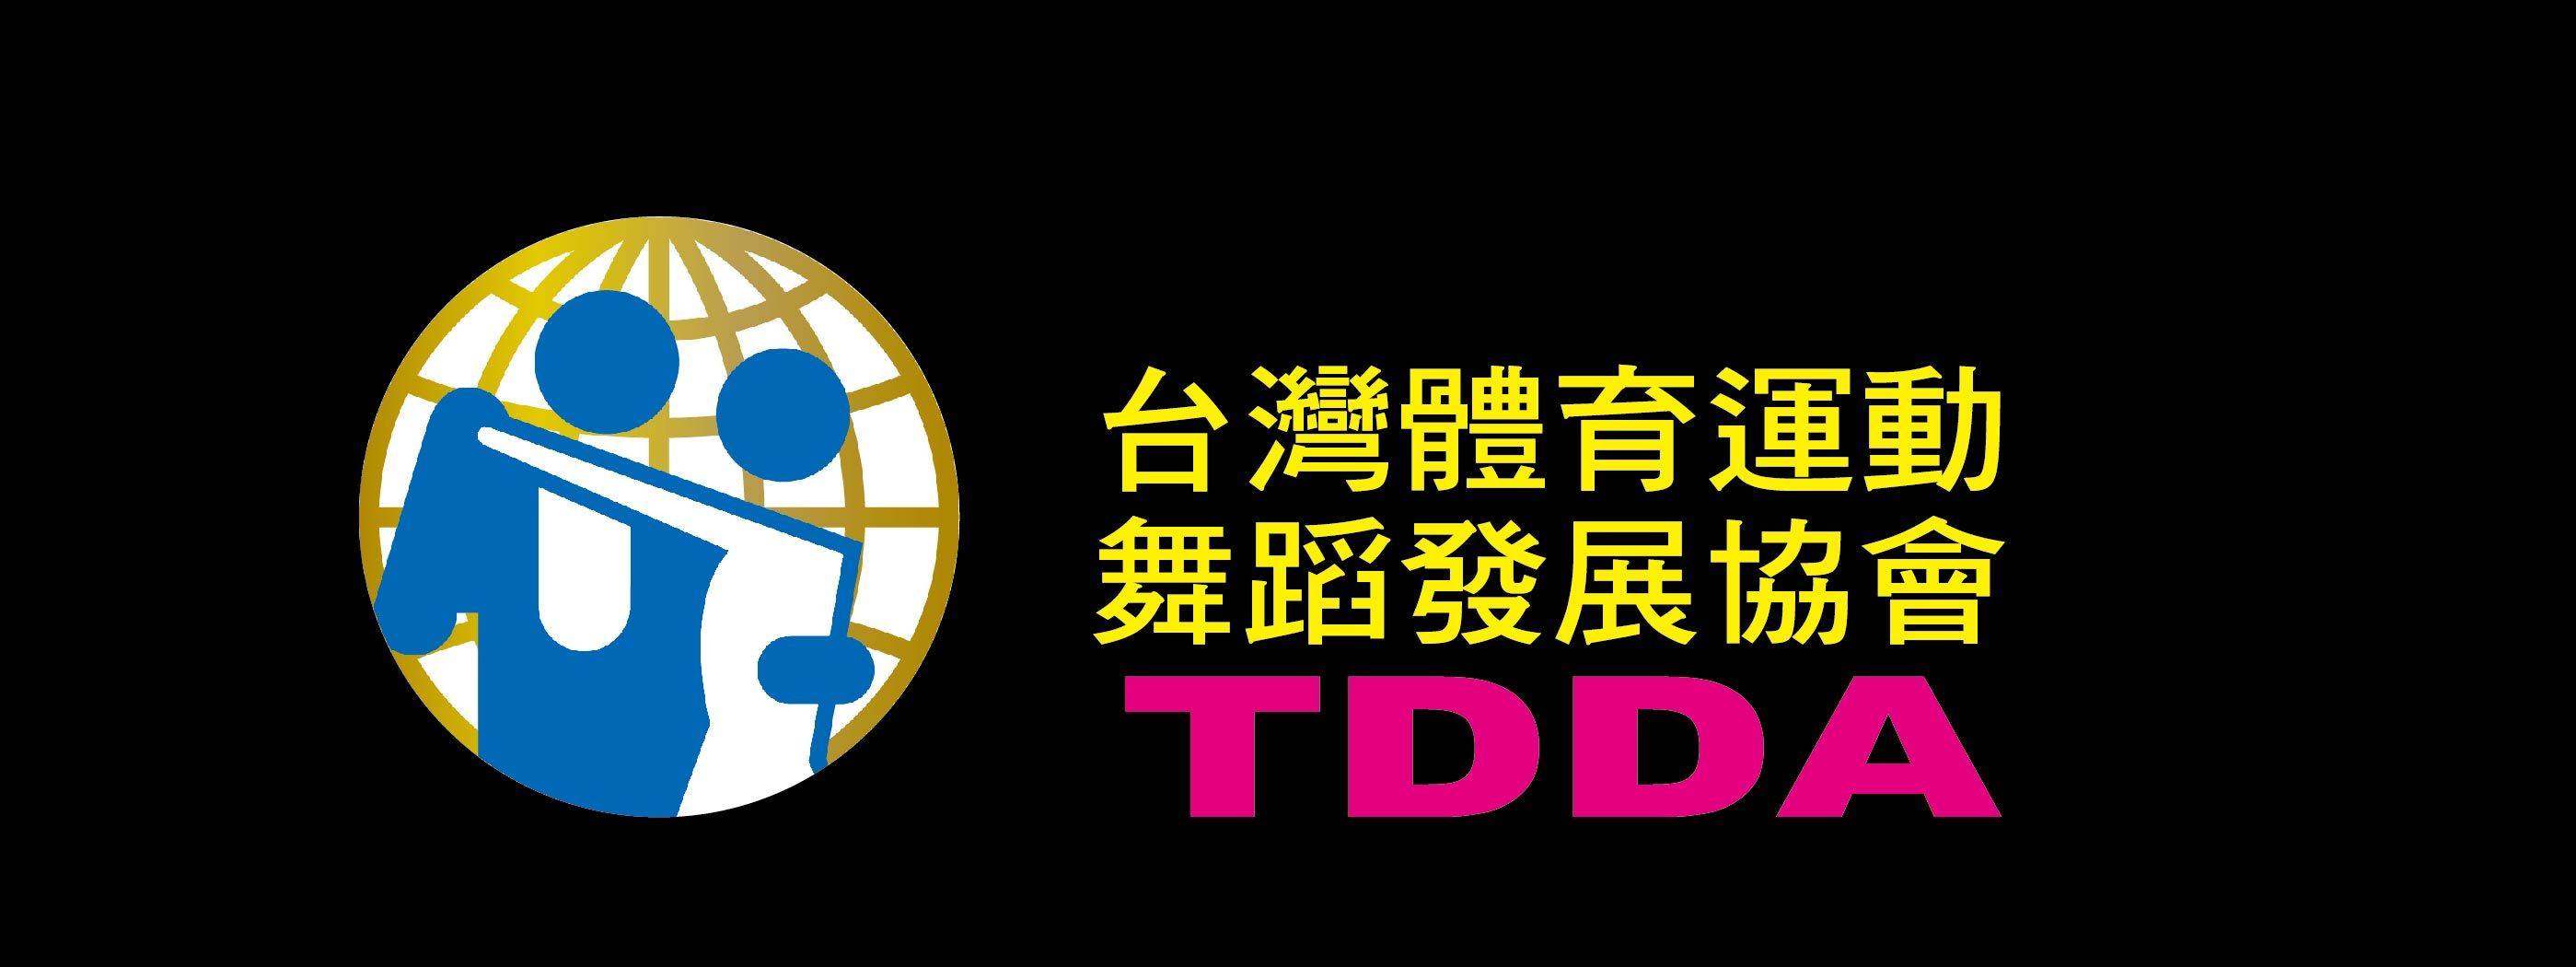 台灣體育運動舞蹈發展協會